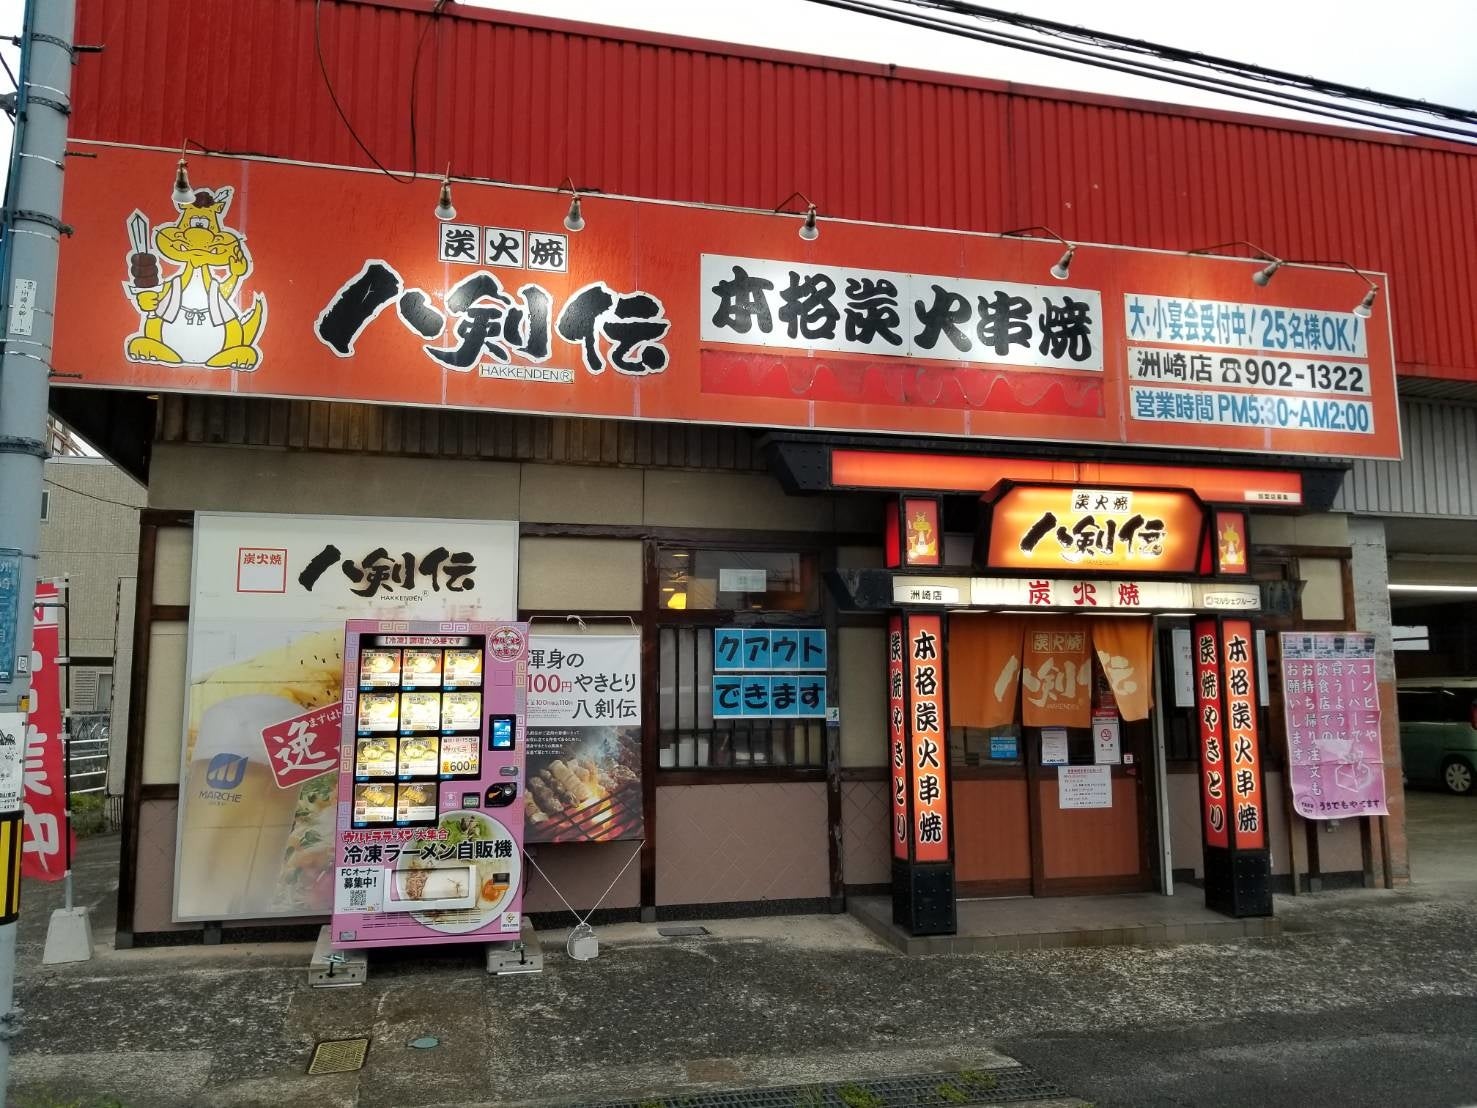 蒸し暑い季節をレモンで爽やかに。日本橋三越本店に爽快レモングルメが全13種類が勢ぞろい！